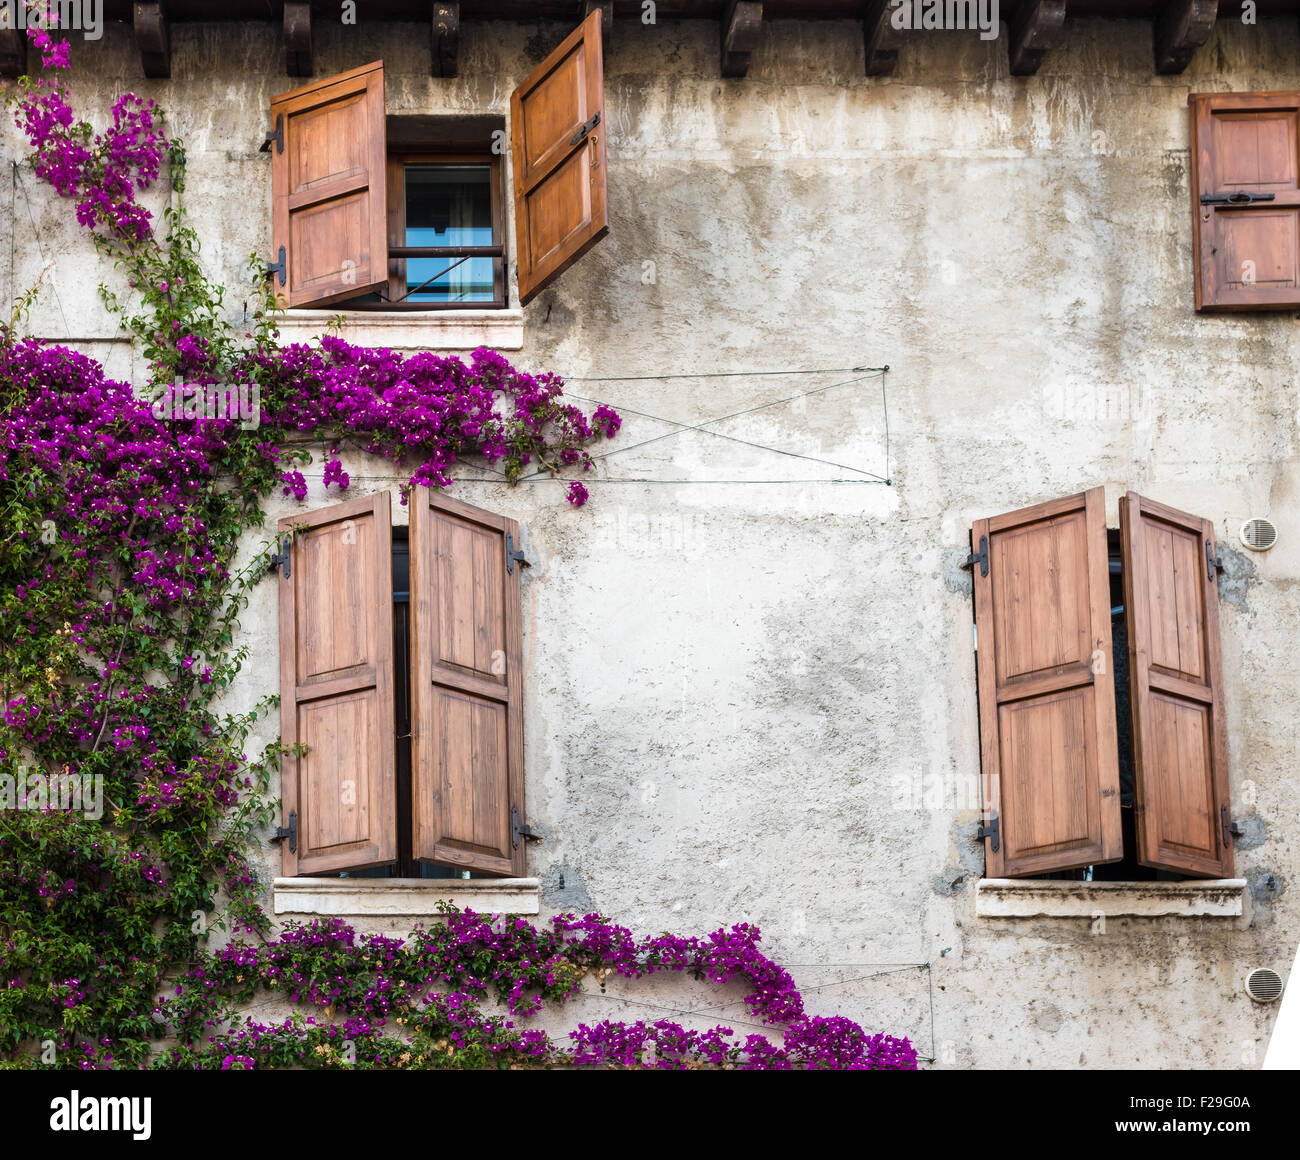 Belle vintage windows avec des fleurs colorées et des portes en bois, de style méditerranéen Banque D'Images